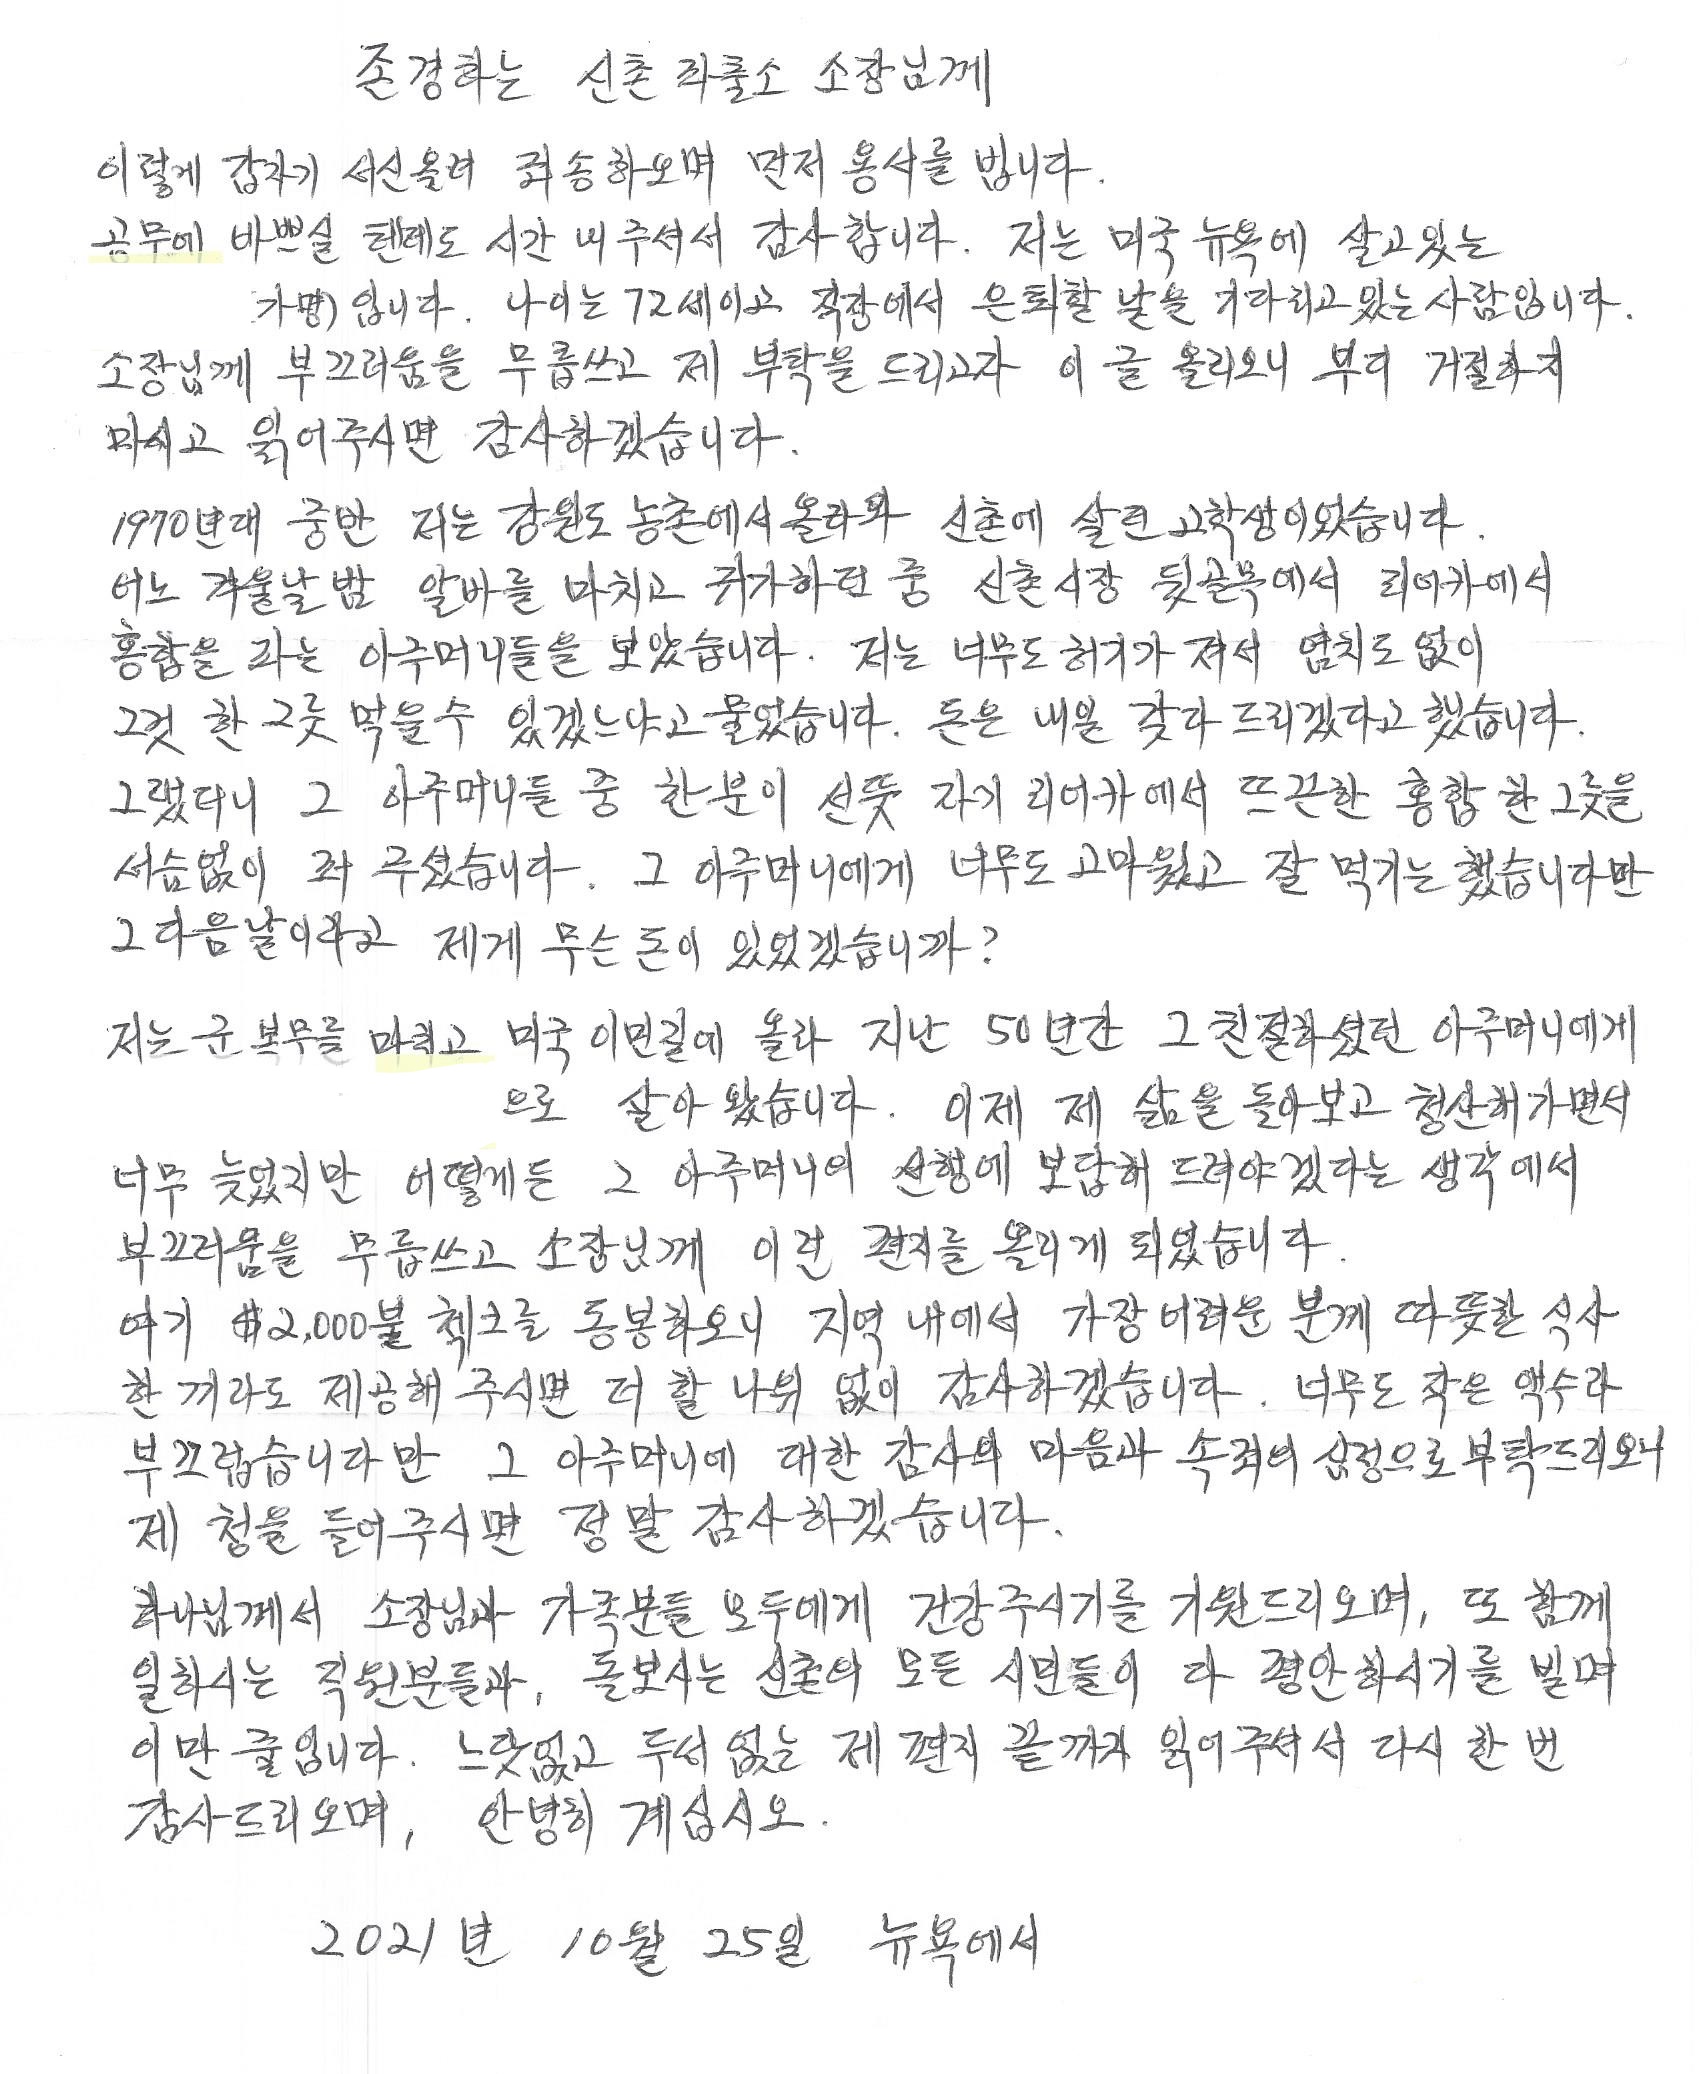 뉴욕에 사는 70대 남성이 서울 서대문구 신촌지구대에 보낸 편지